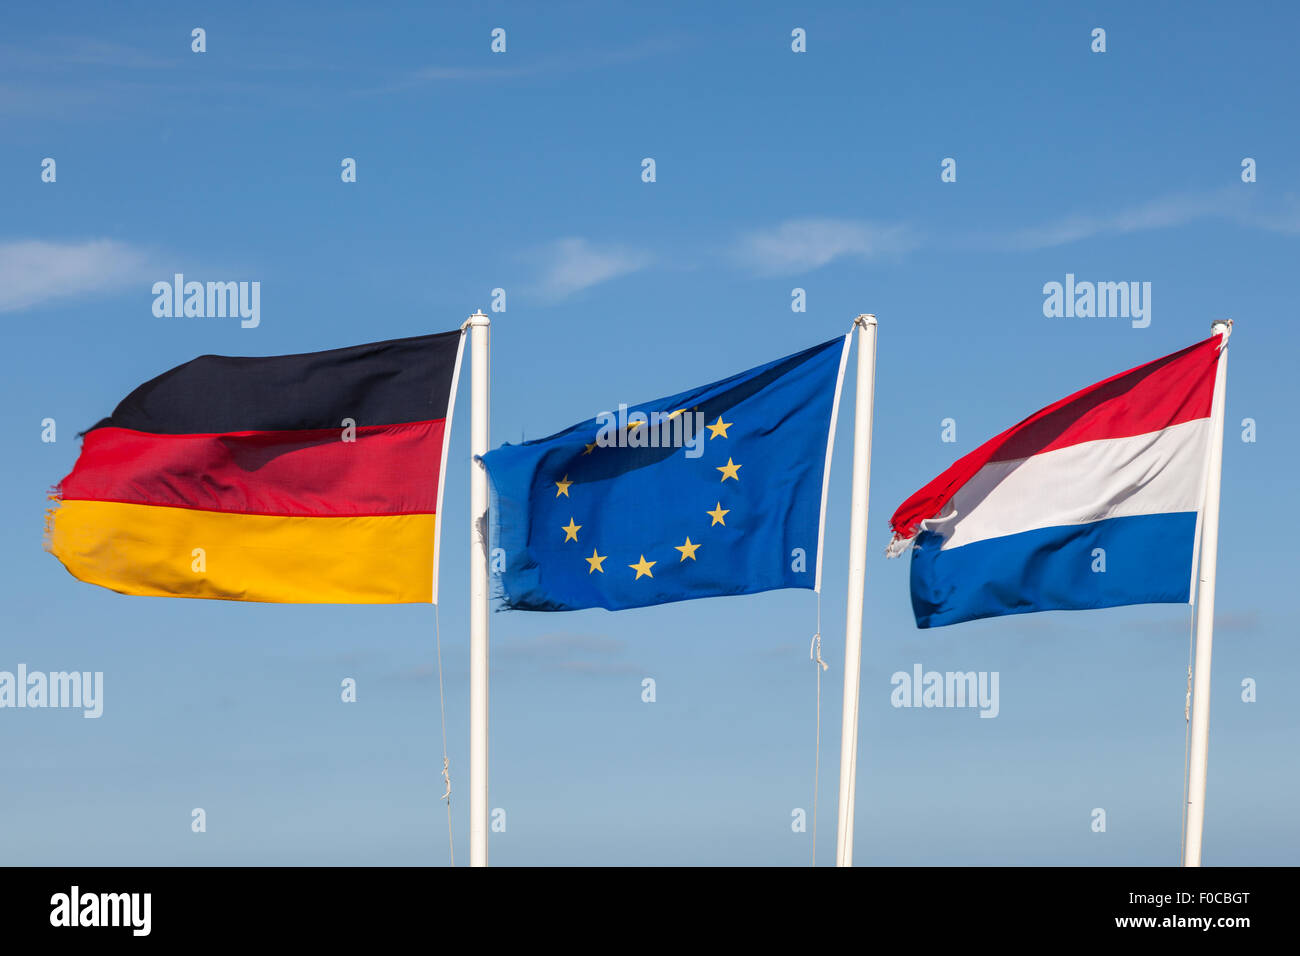 Allemagne pays bas Banque de photographies et d'images à haute résolution -  Alamy